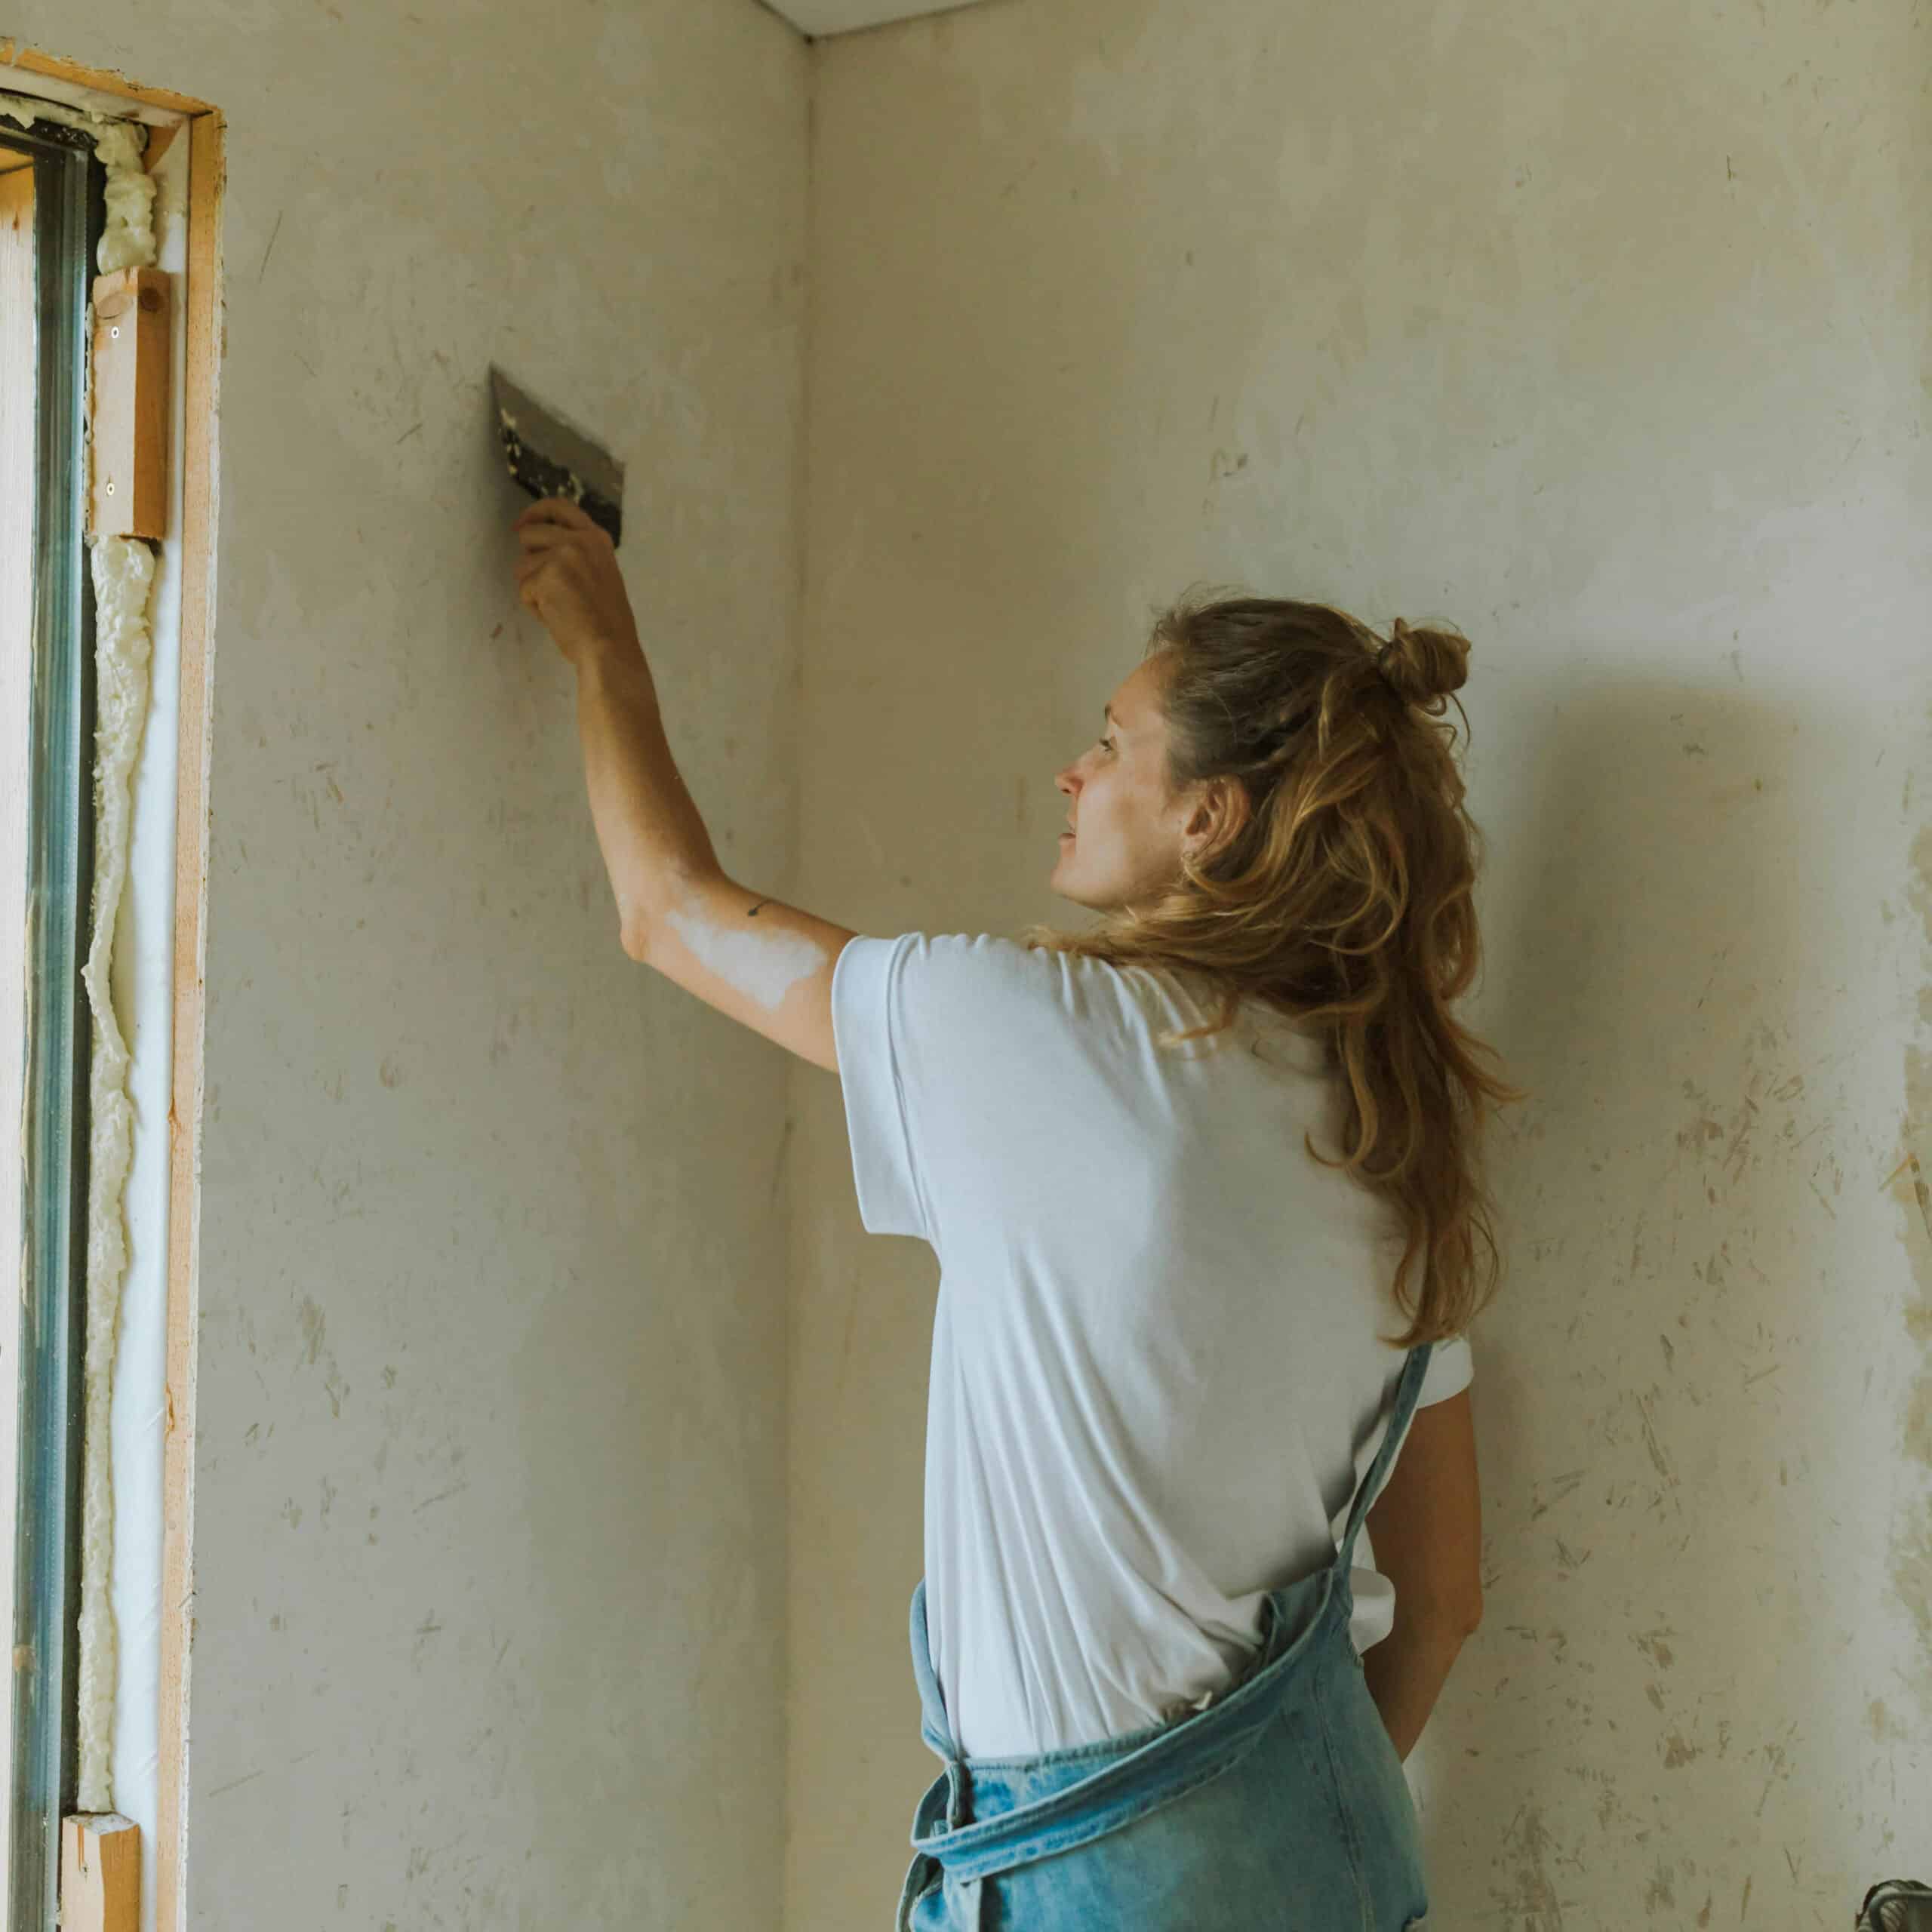 Rénover une maison soi-même - Un femme en train de préparer un mur avant de le peindre